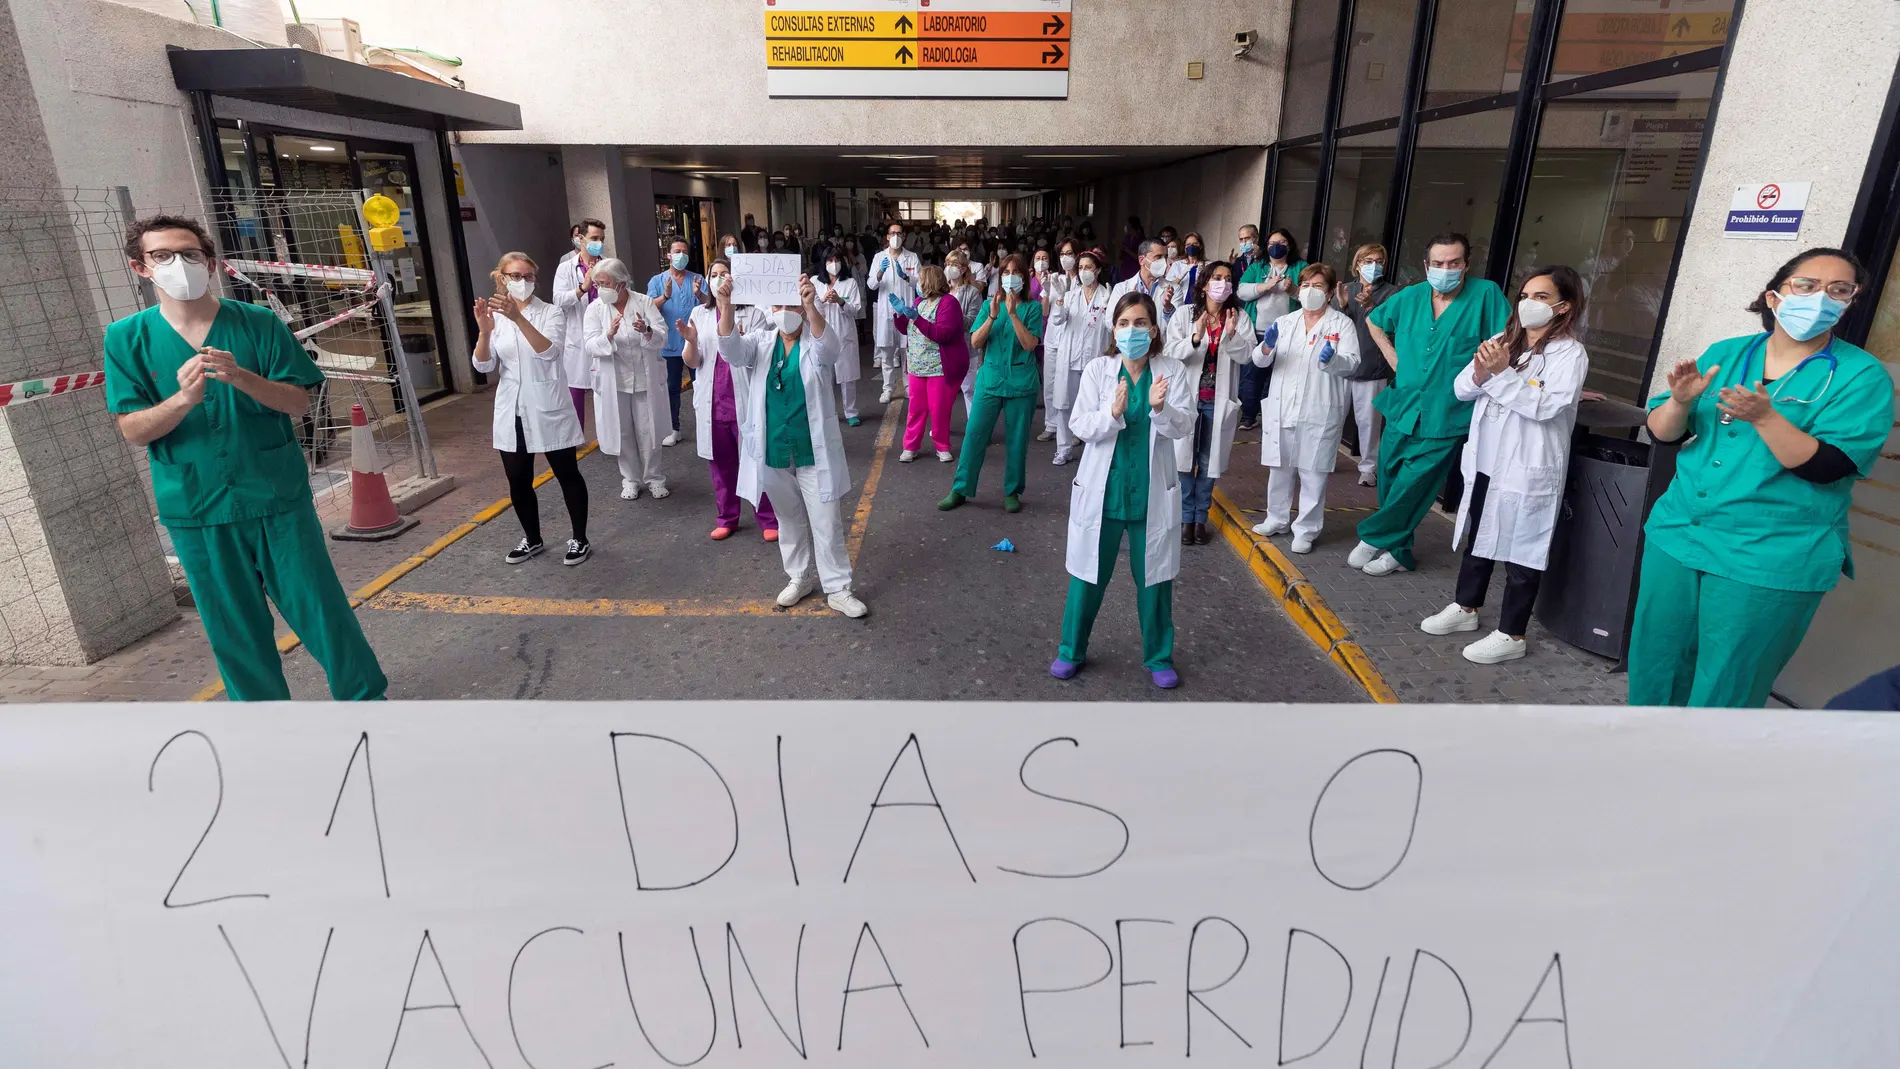 Los sanitarios del hospital Rafael Méndez de Lorca han vuelto a desplegar una pancarta con el lema “21 días o vacuna perdida”